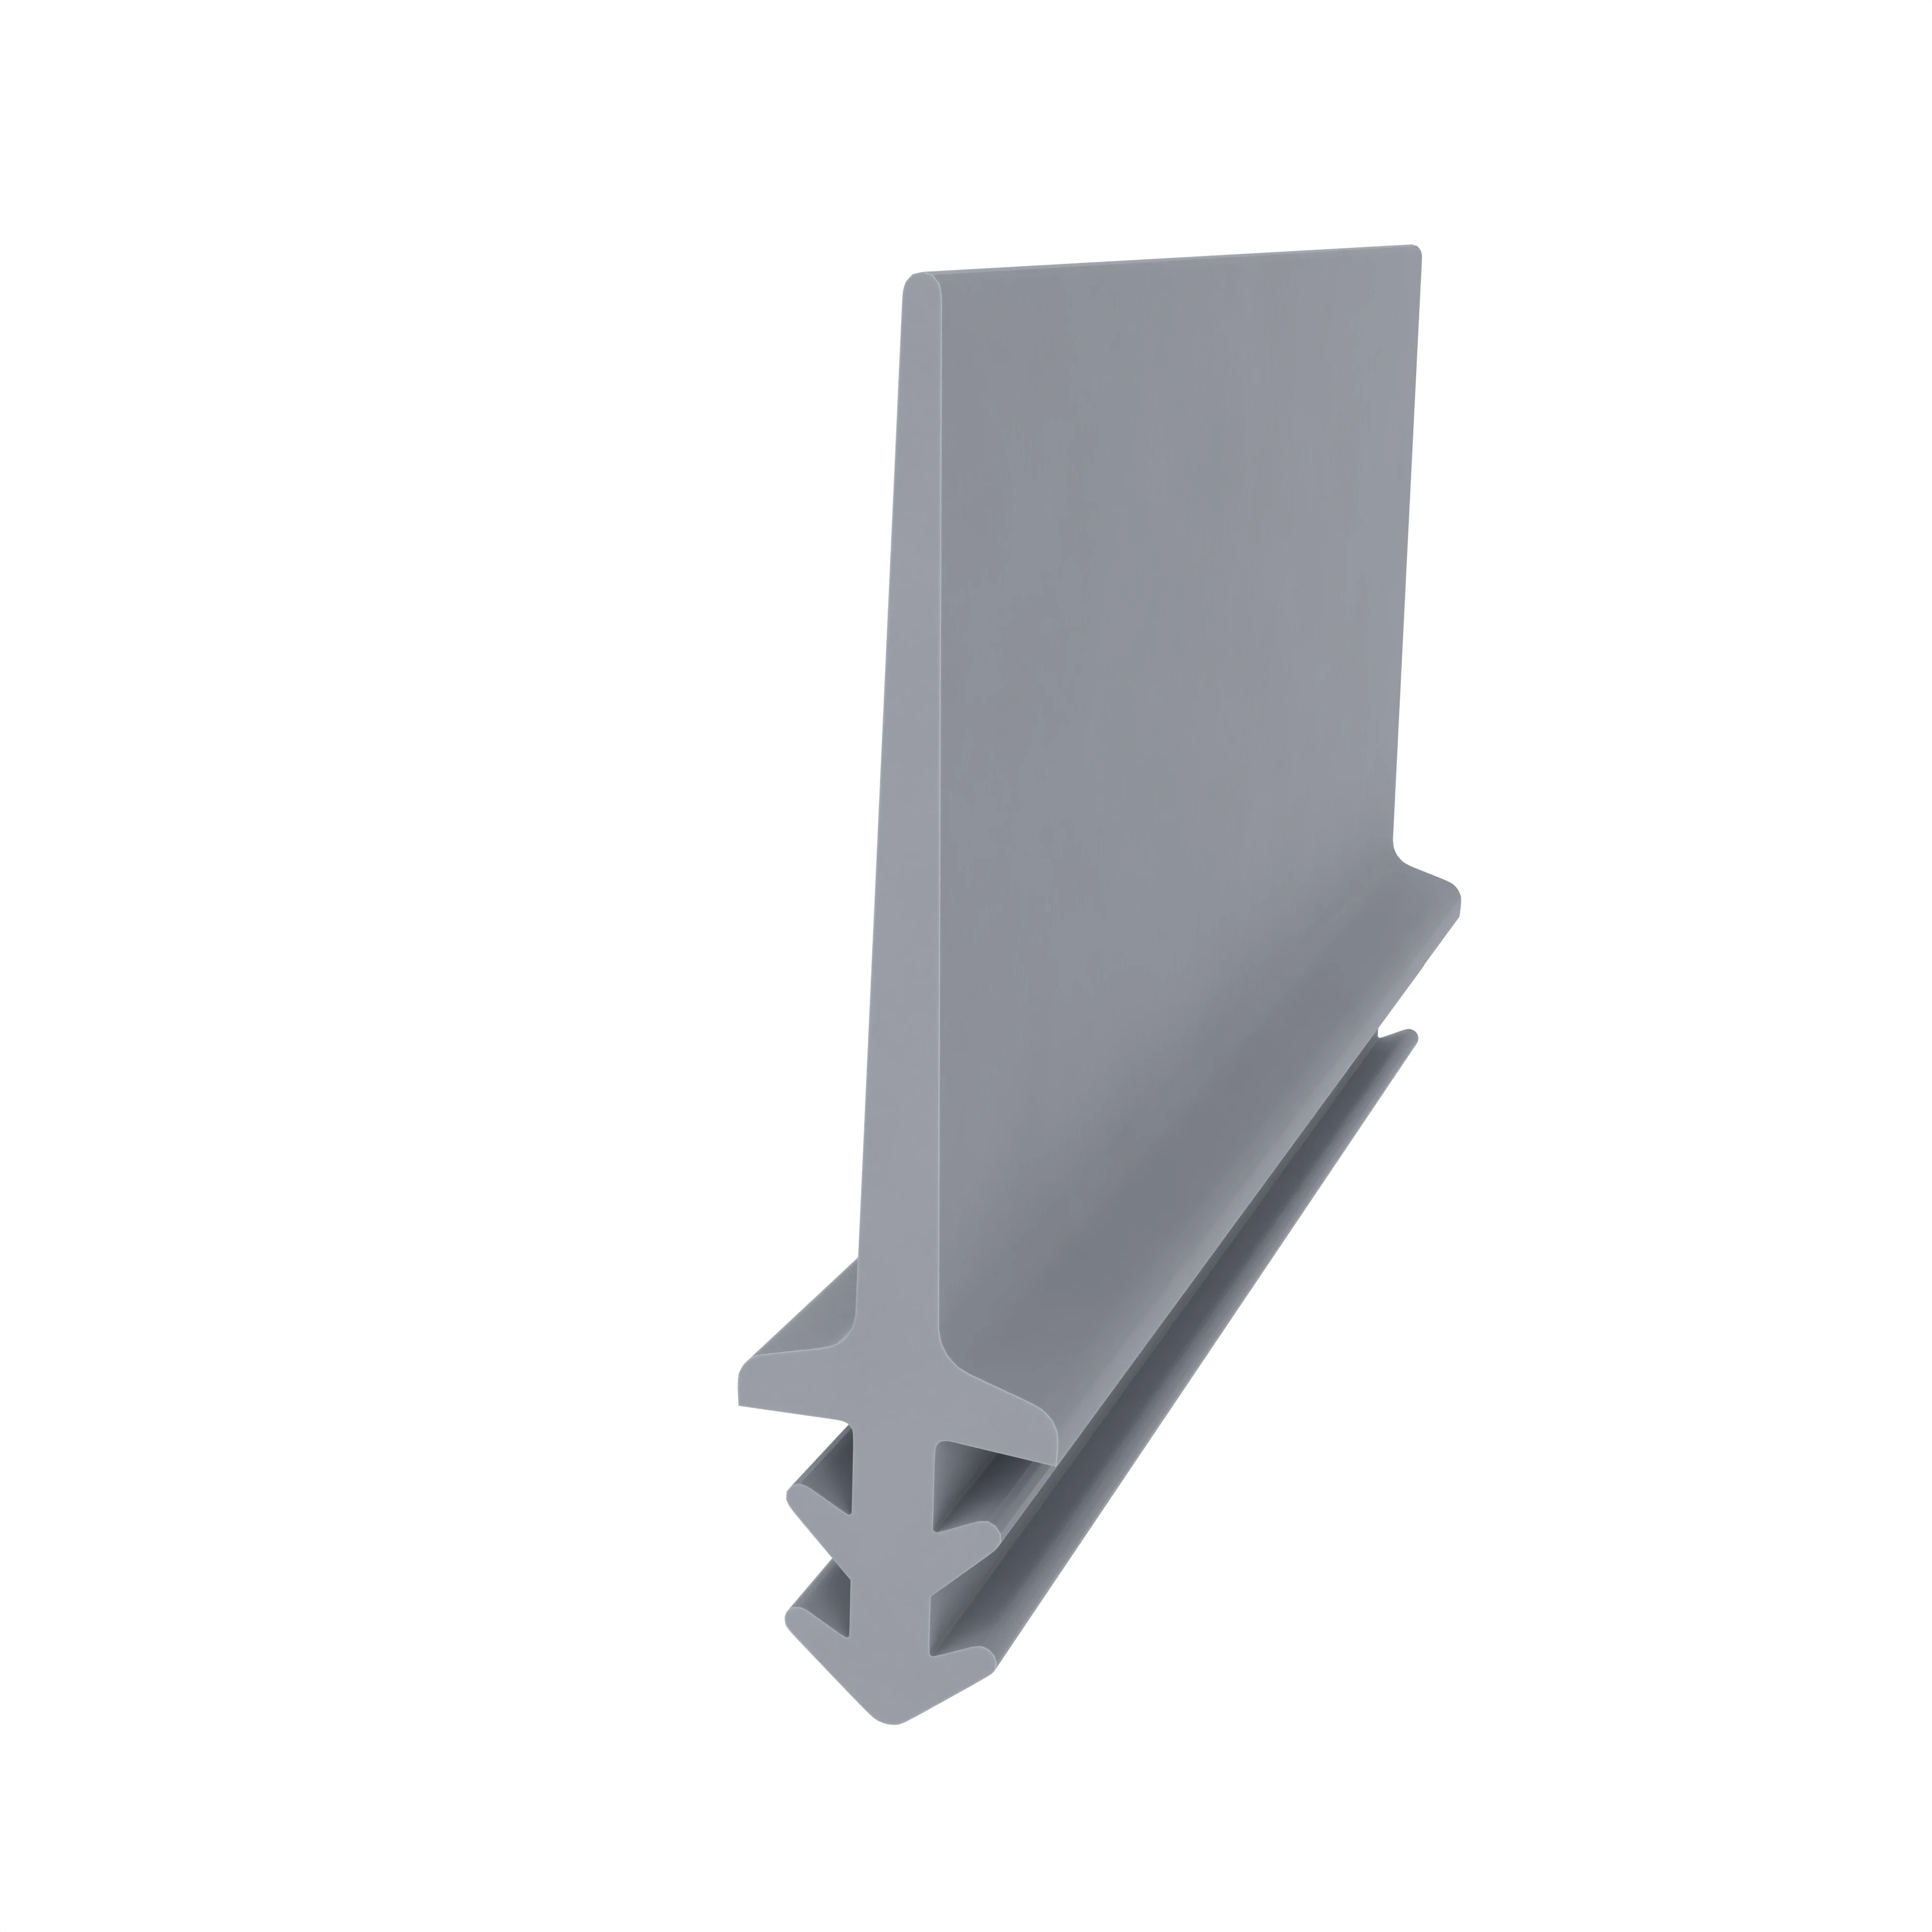 Anschlagdichtung für Holzfenster oder -türen | 32 mm Höhe | Farbe: grau 